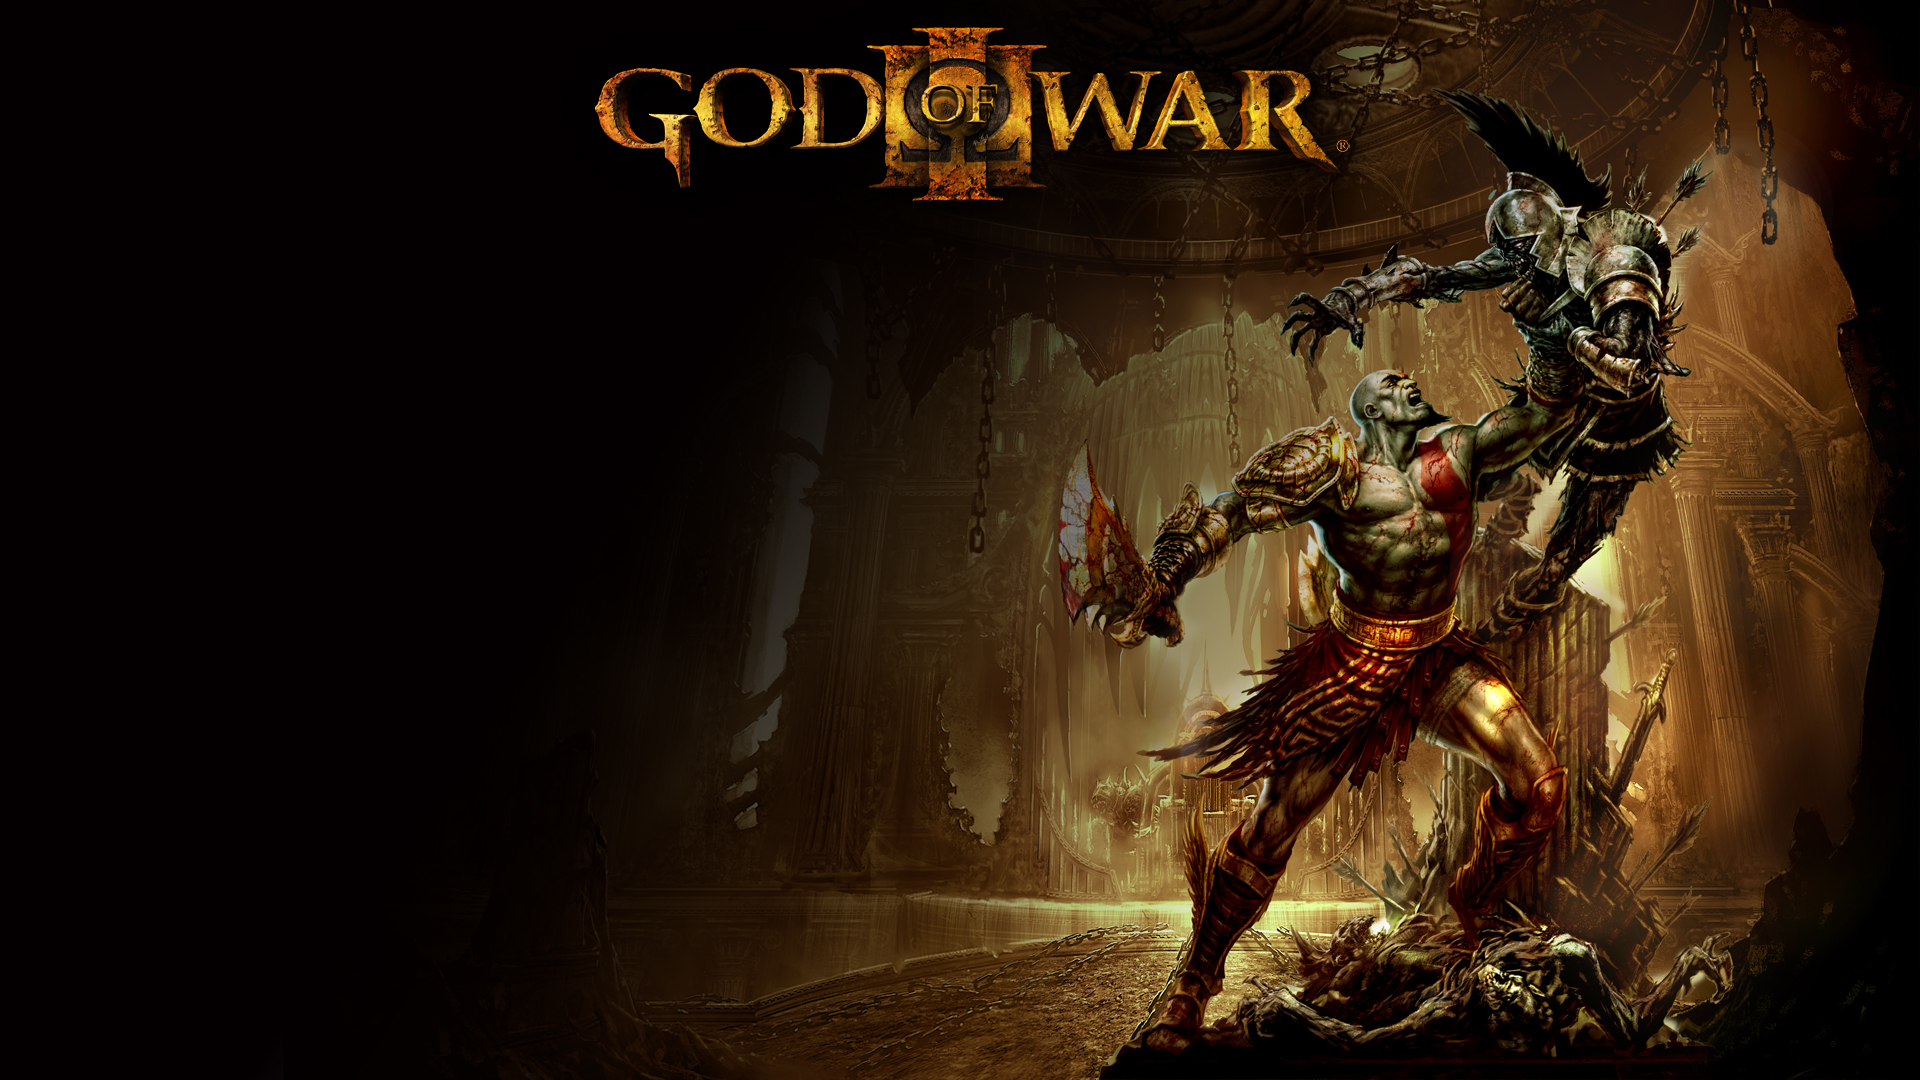 god of war wallpaper hd,gioco di avventura e azione,gioco per pc,buio,cg artwork,giochi